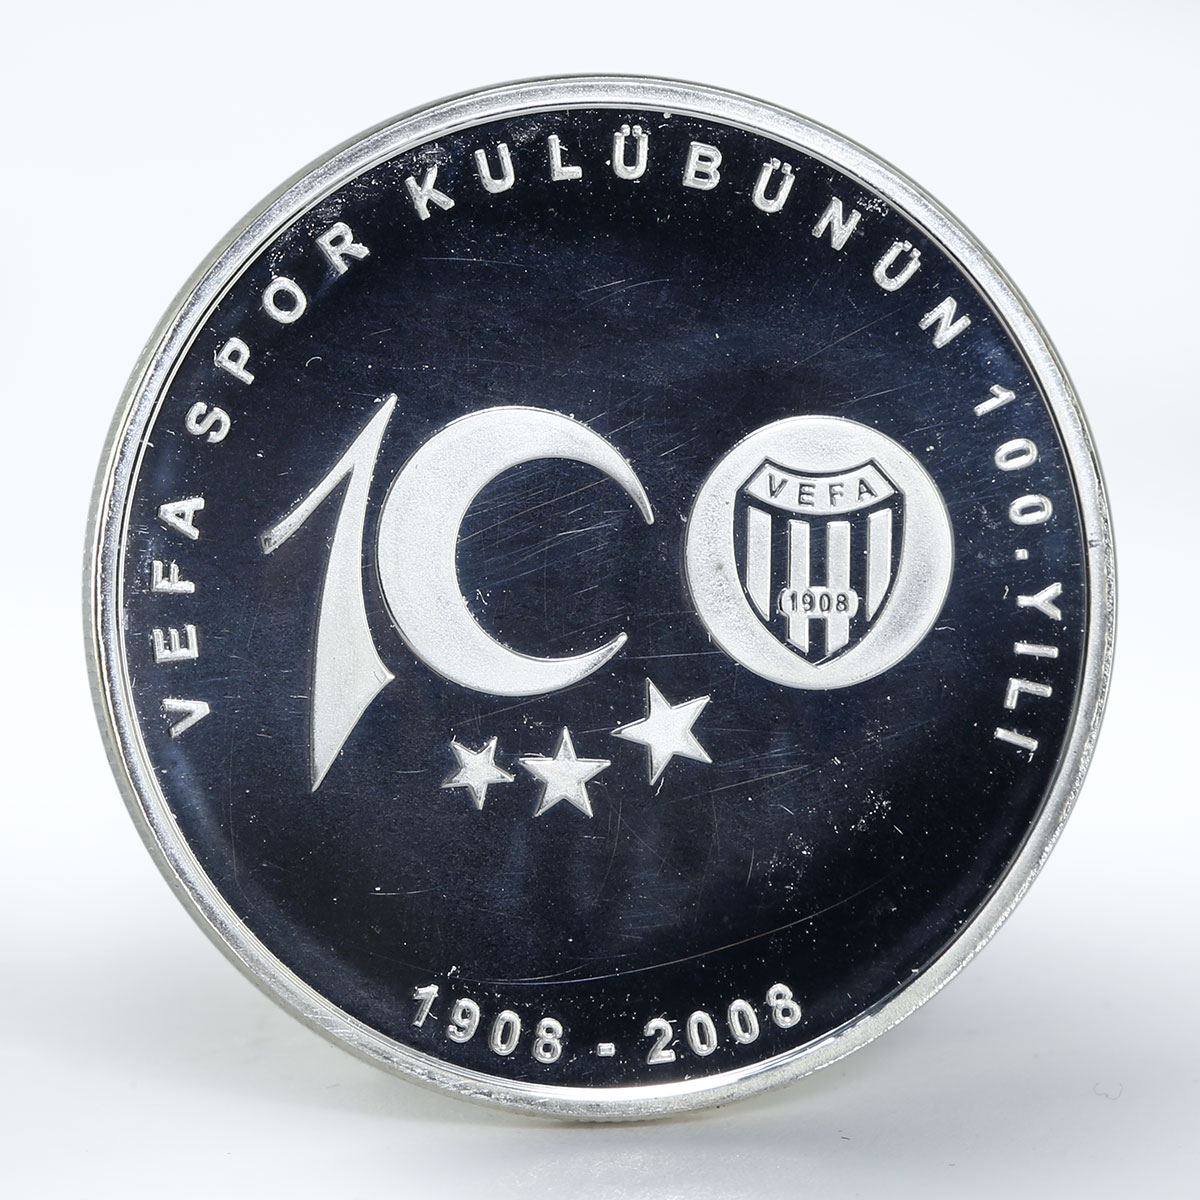 Turkey 40 yeni lira 100th of Vefa Sport club colored silver coin 2008